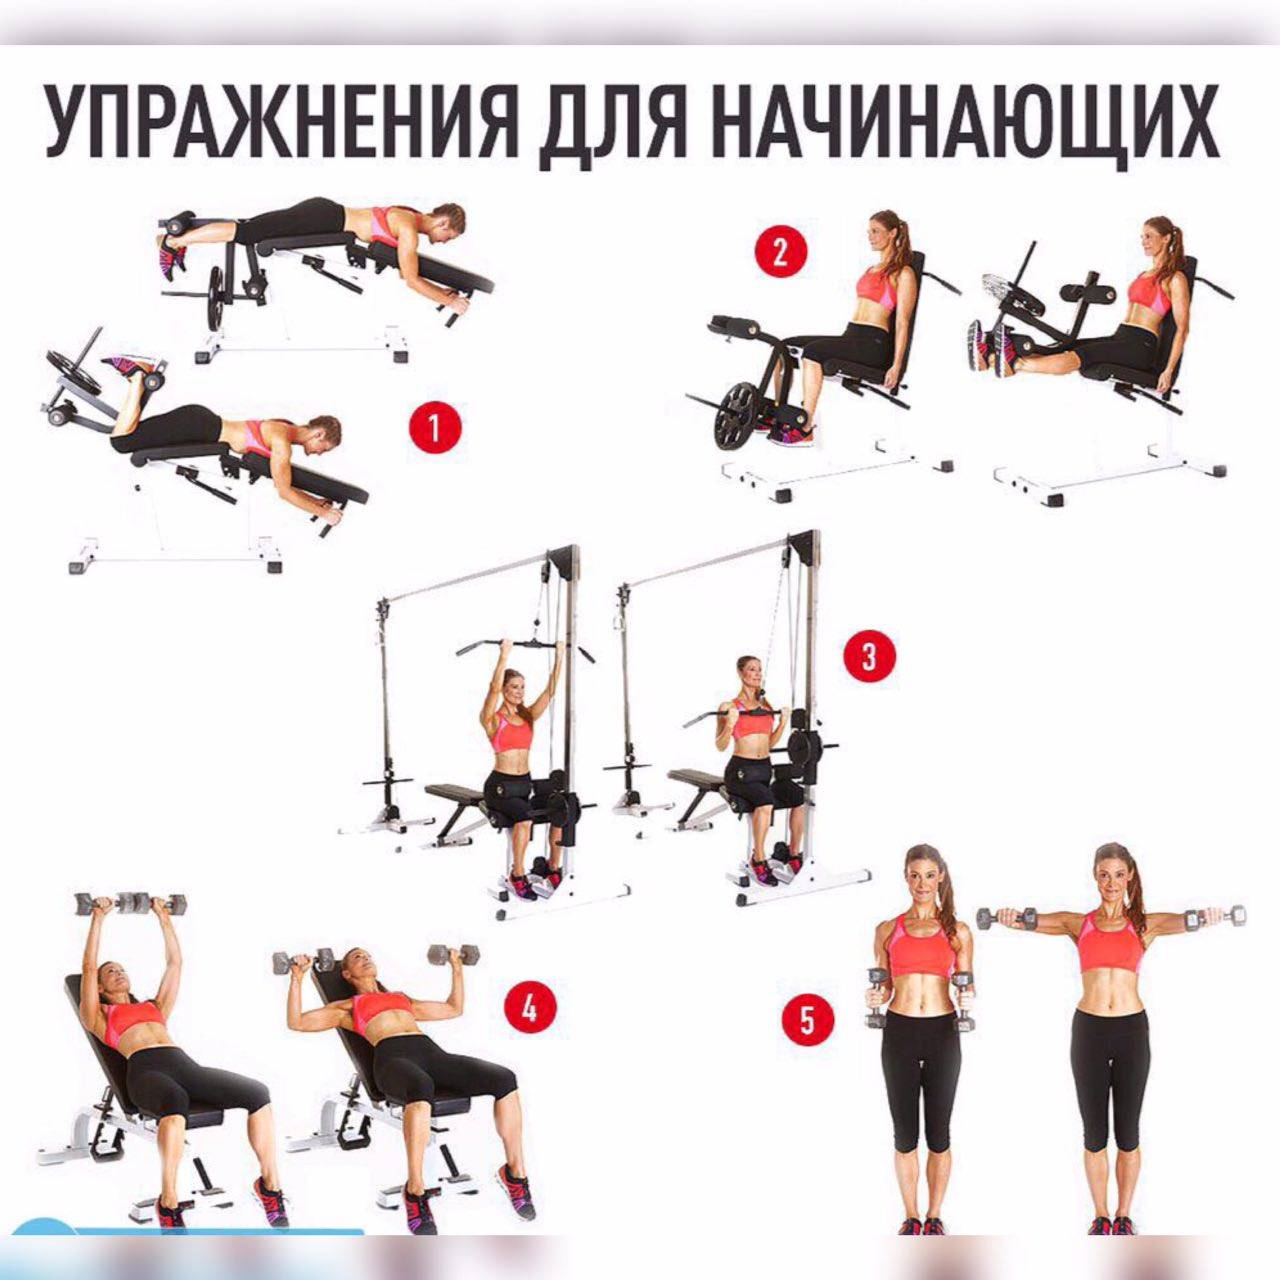 Программа круговой тренировки в тренажерном зале для мужчин и женщин